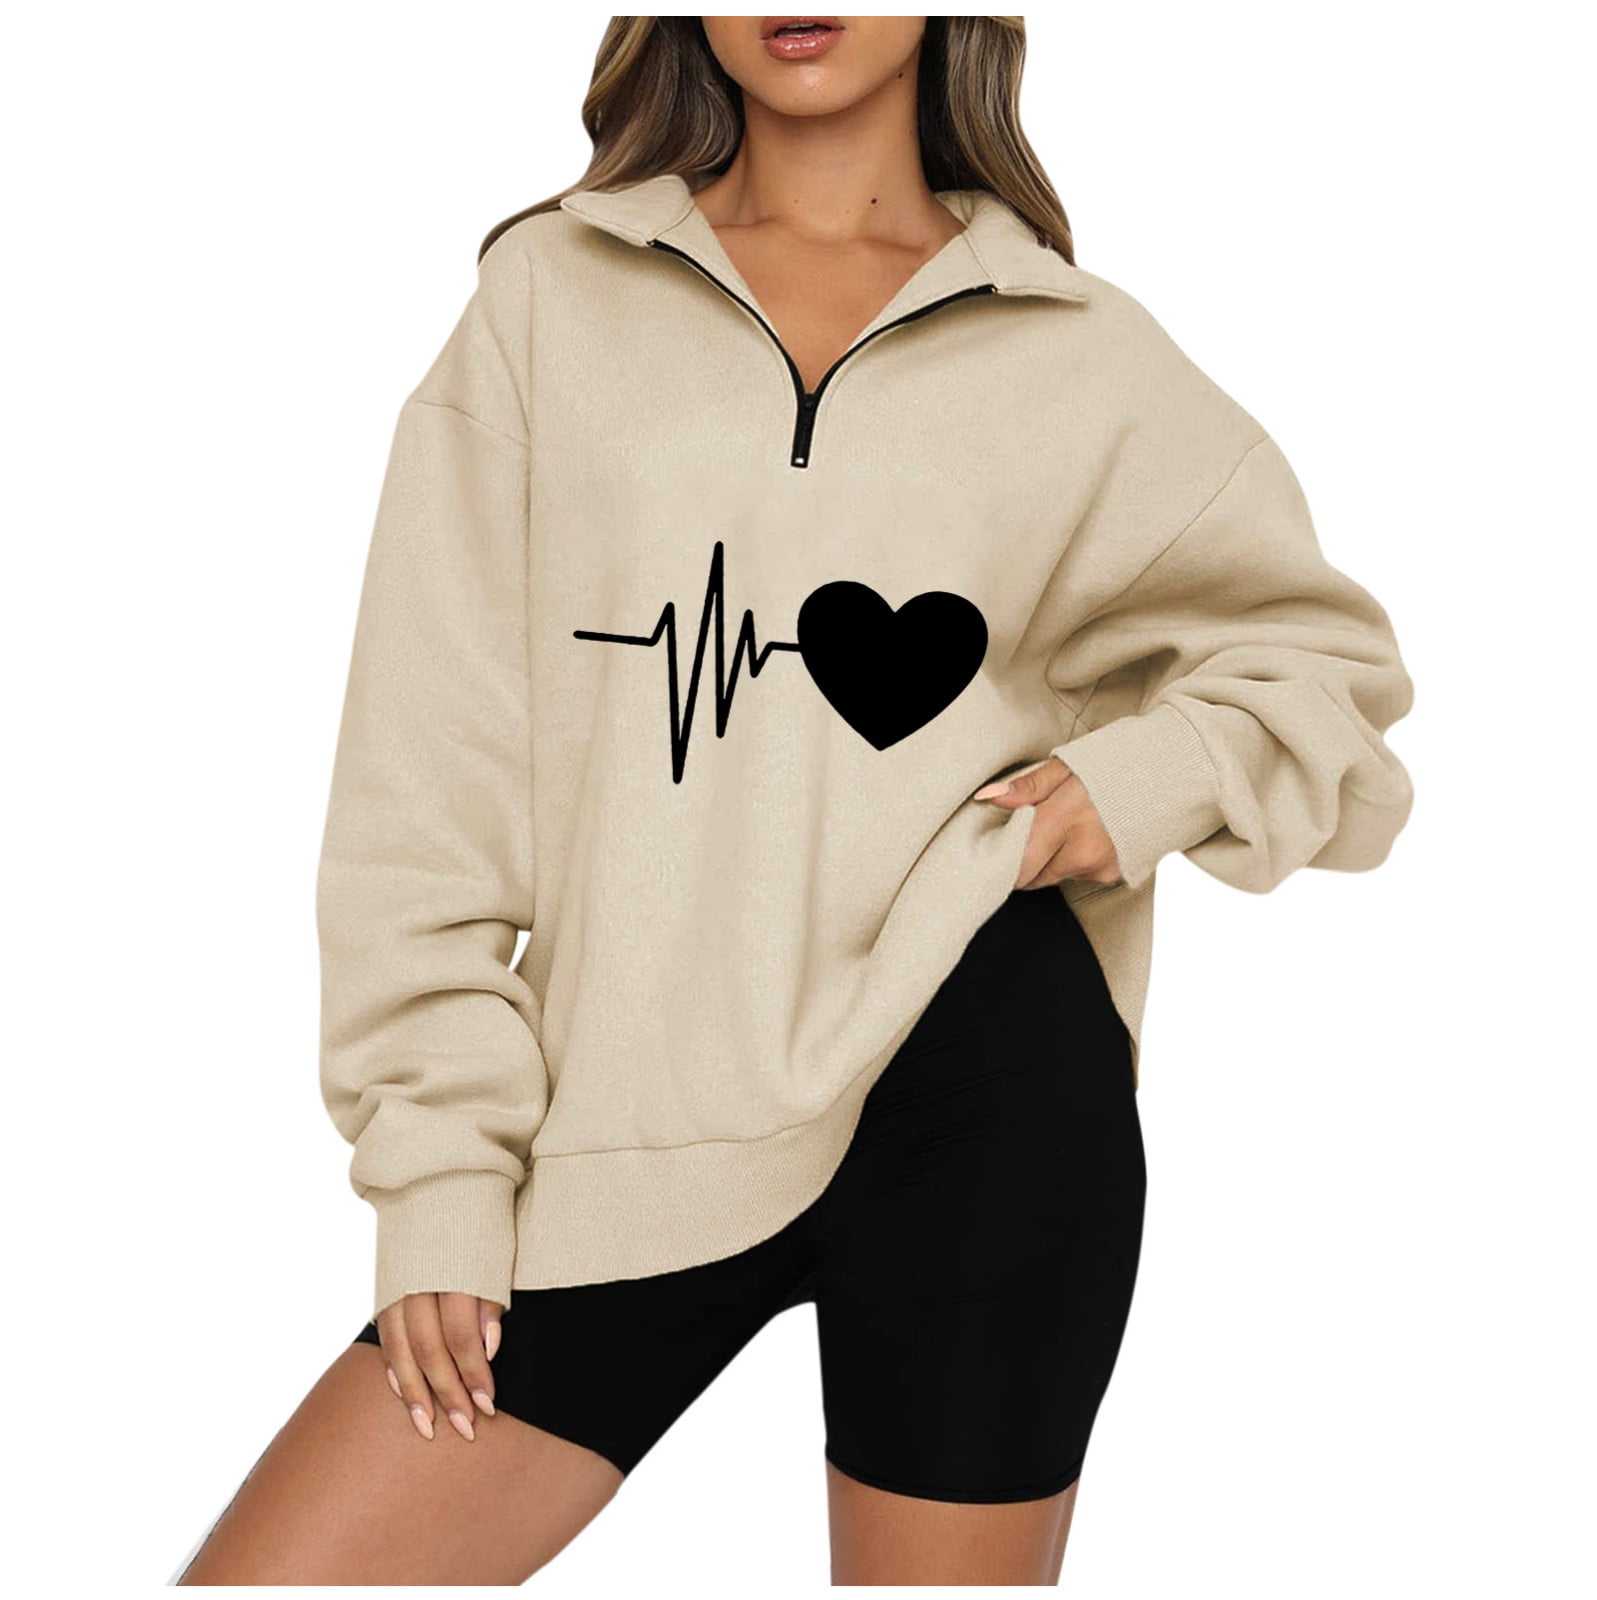 Yyeselk Oversized Sweatshirts for Women Quarter Zip Up ECG Graphic Fleece  Casual Sweatshirt Long Sleeve Half Zip Comfy Loose Drop Shoulder Pullover  Tops Gray XXL 